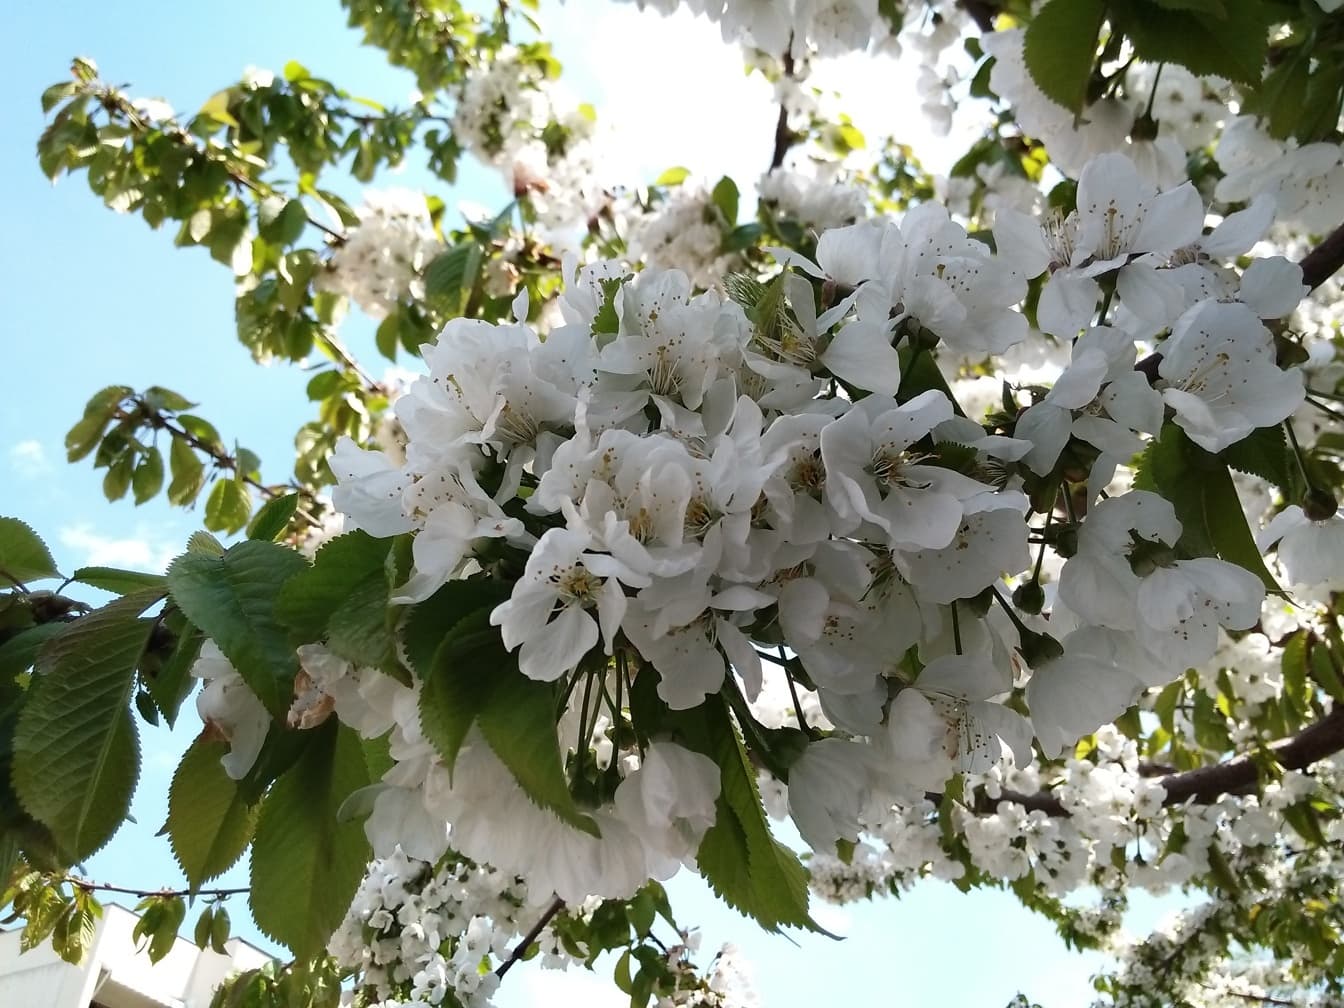 Puu valkoisilla kukilla keväällä